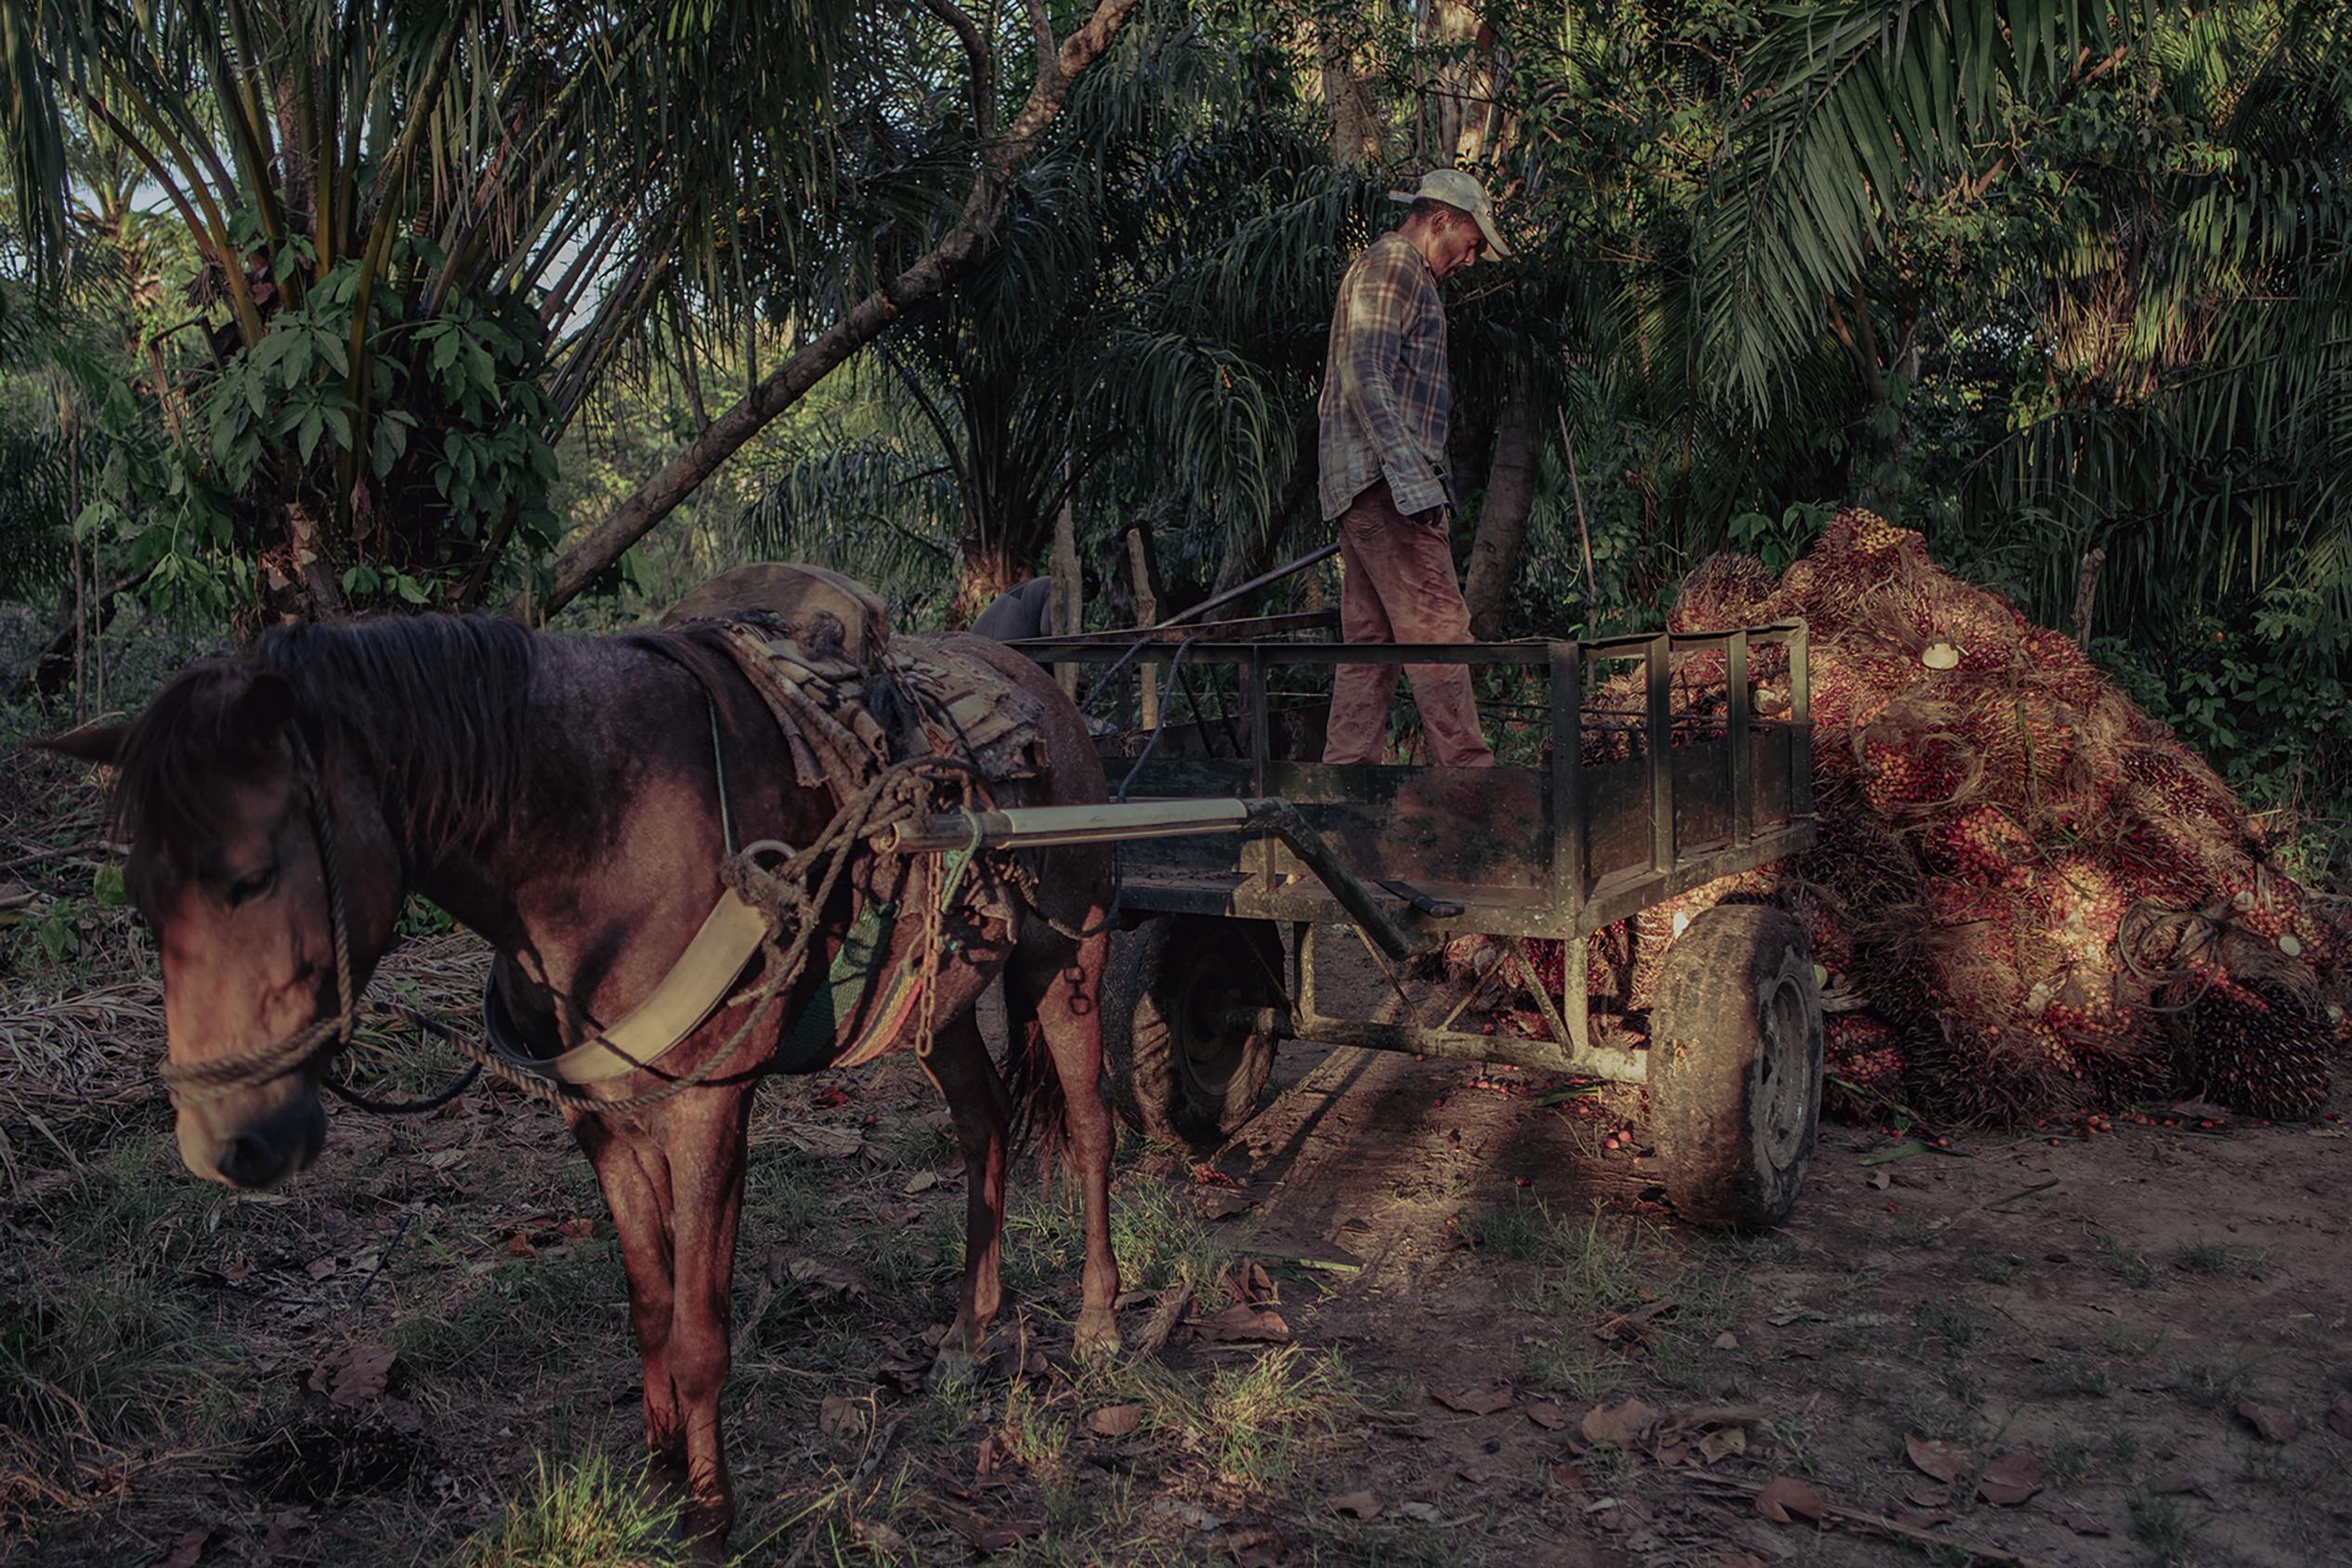 Santos Yanes es trabajador de la palma africana, se encarga de la recolección del fruto en los terrenos que rodean a Nueva Armenia. A Santos no le gusta su trabajo y no es porque sea totalmente físico, es porque conoce el daño que la palma africana le causa a la tierra dejándola estéril, 